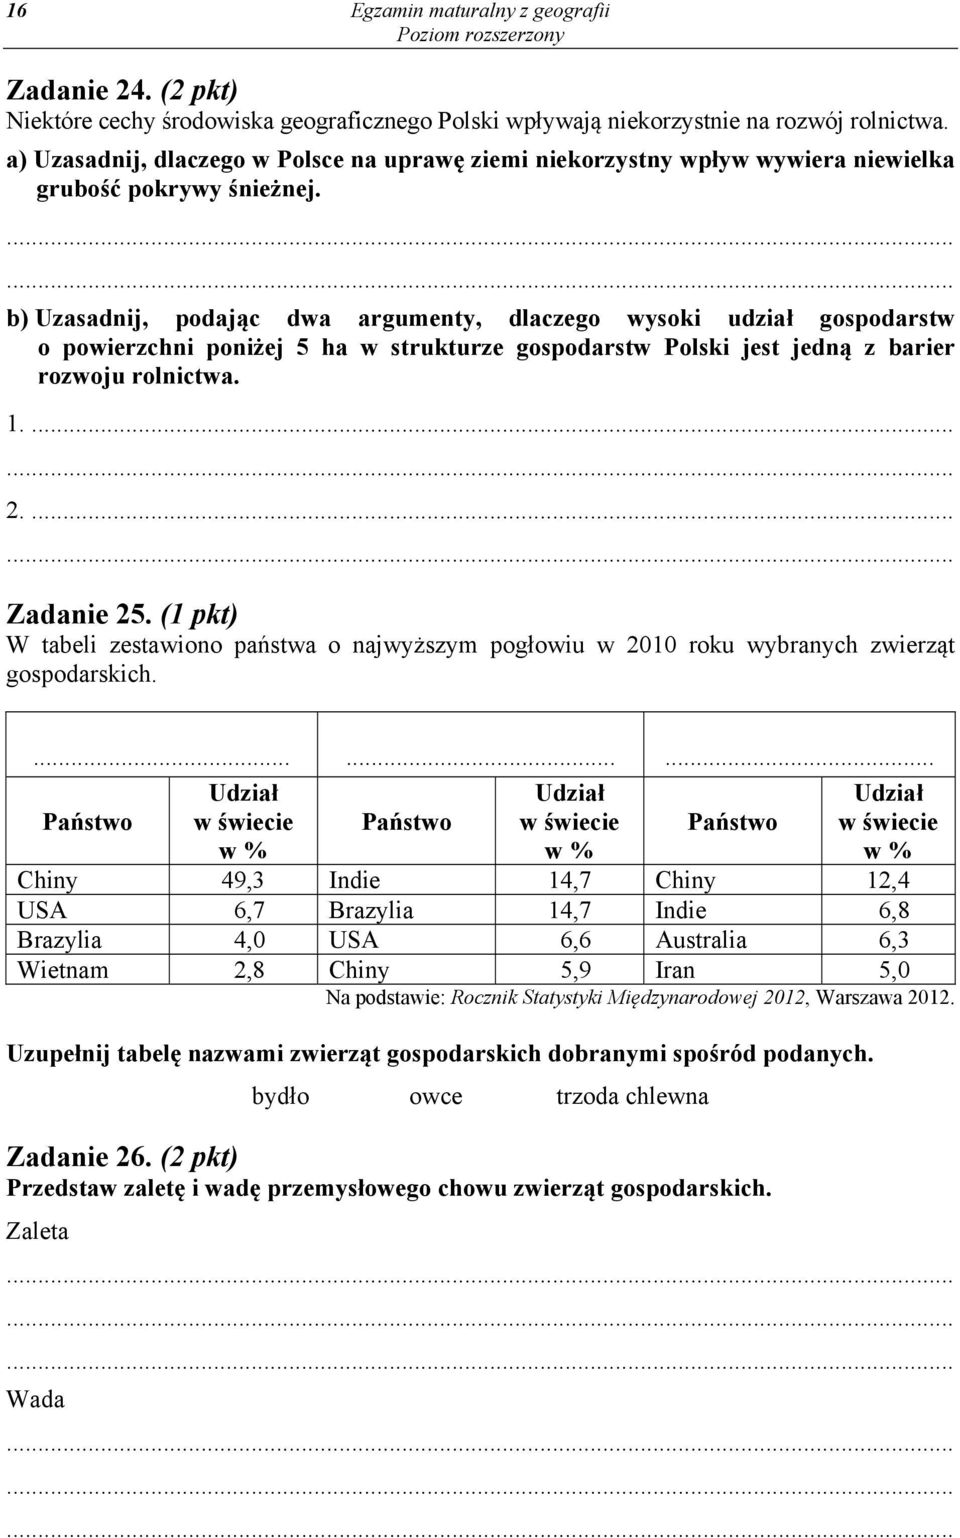 b) Uzasadnij, podając dwa argumenty, dlaczego wysoki udział gospodarstw o powierzchni poniżej 5 ha w strukturze gospodarstw Polski jest jedną z barier rozwoju rolnictwa. 1.... 2.... Zadanie 25.